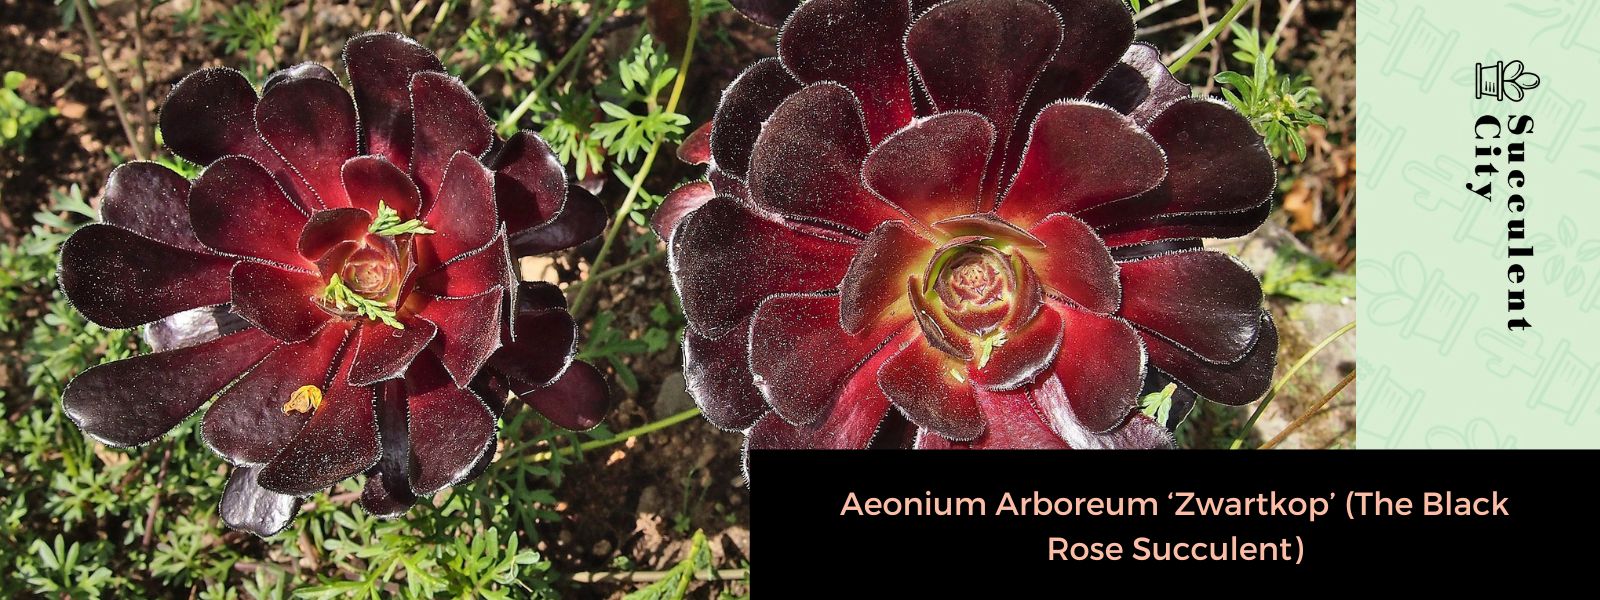 Aeonium Arboreum 'Zwartkop' (La suculenta rosa negra)